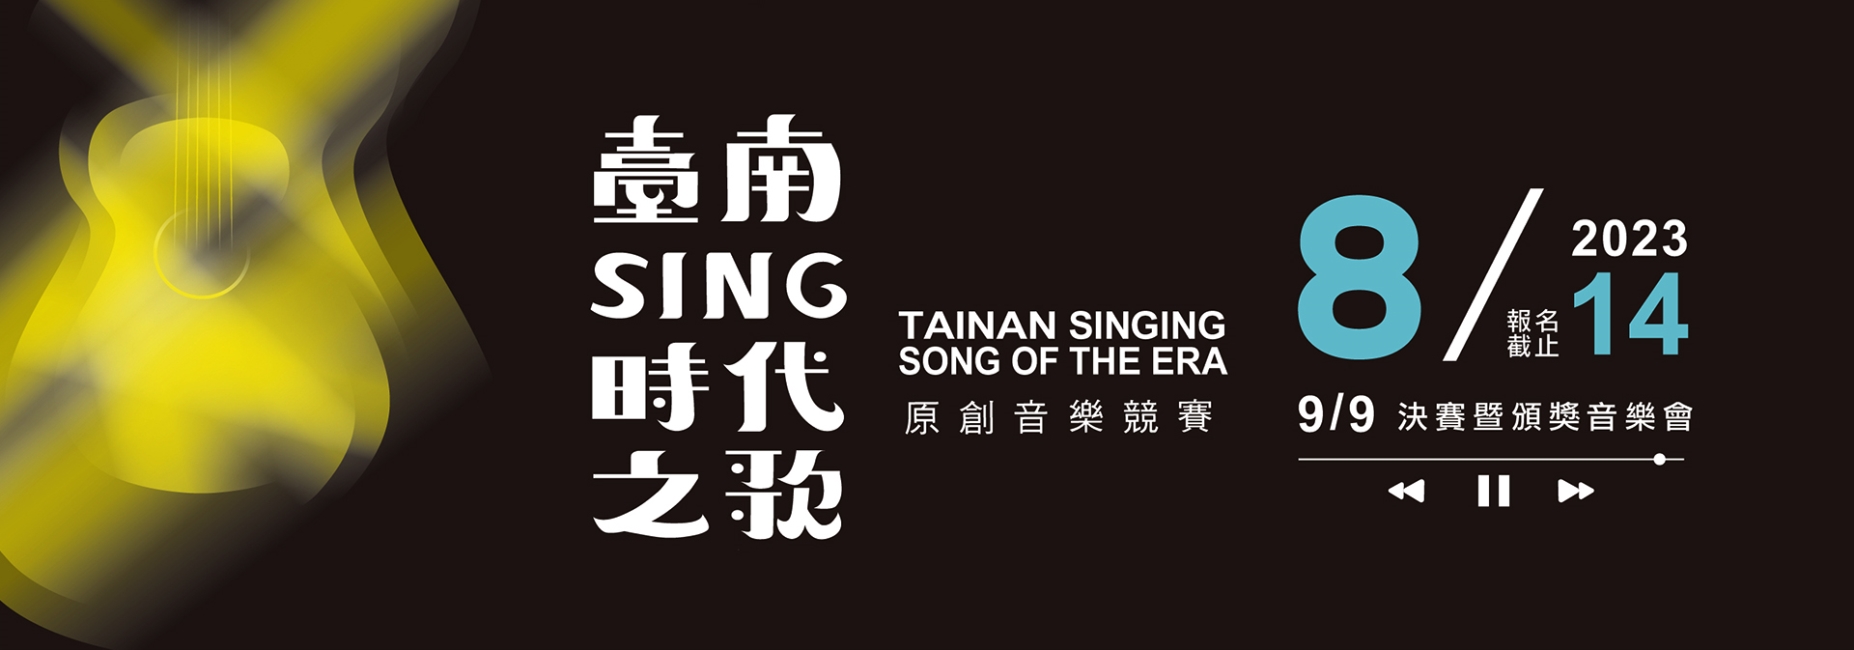 2023臺南Sing時代之歌原創音樂競賽徵件開跑(另開視窗)